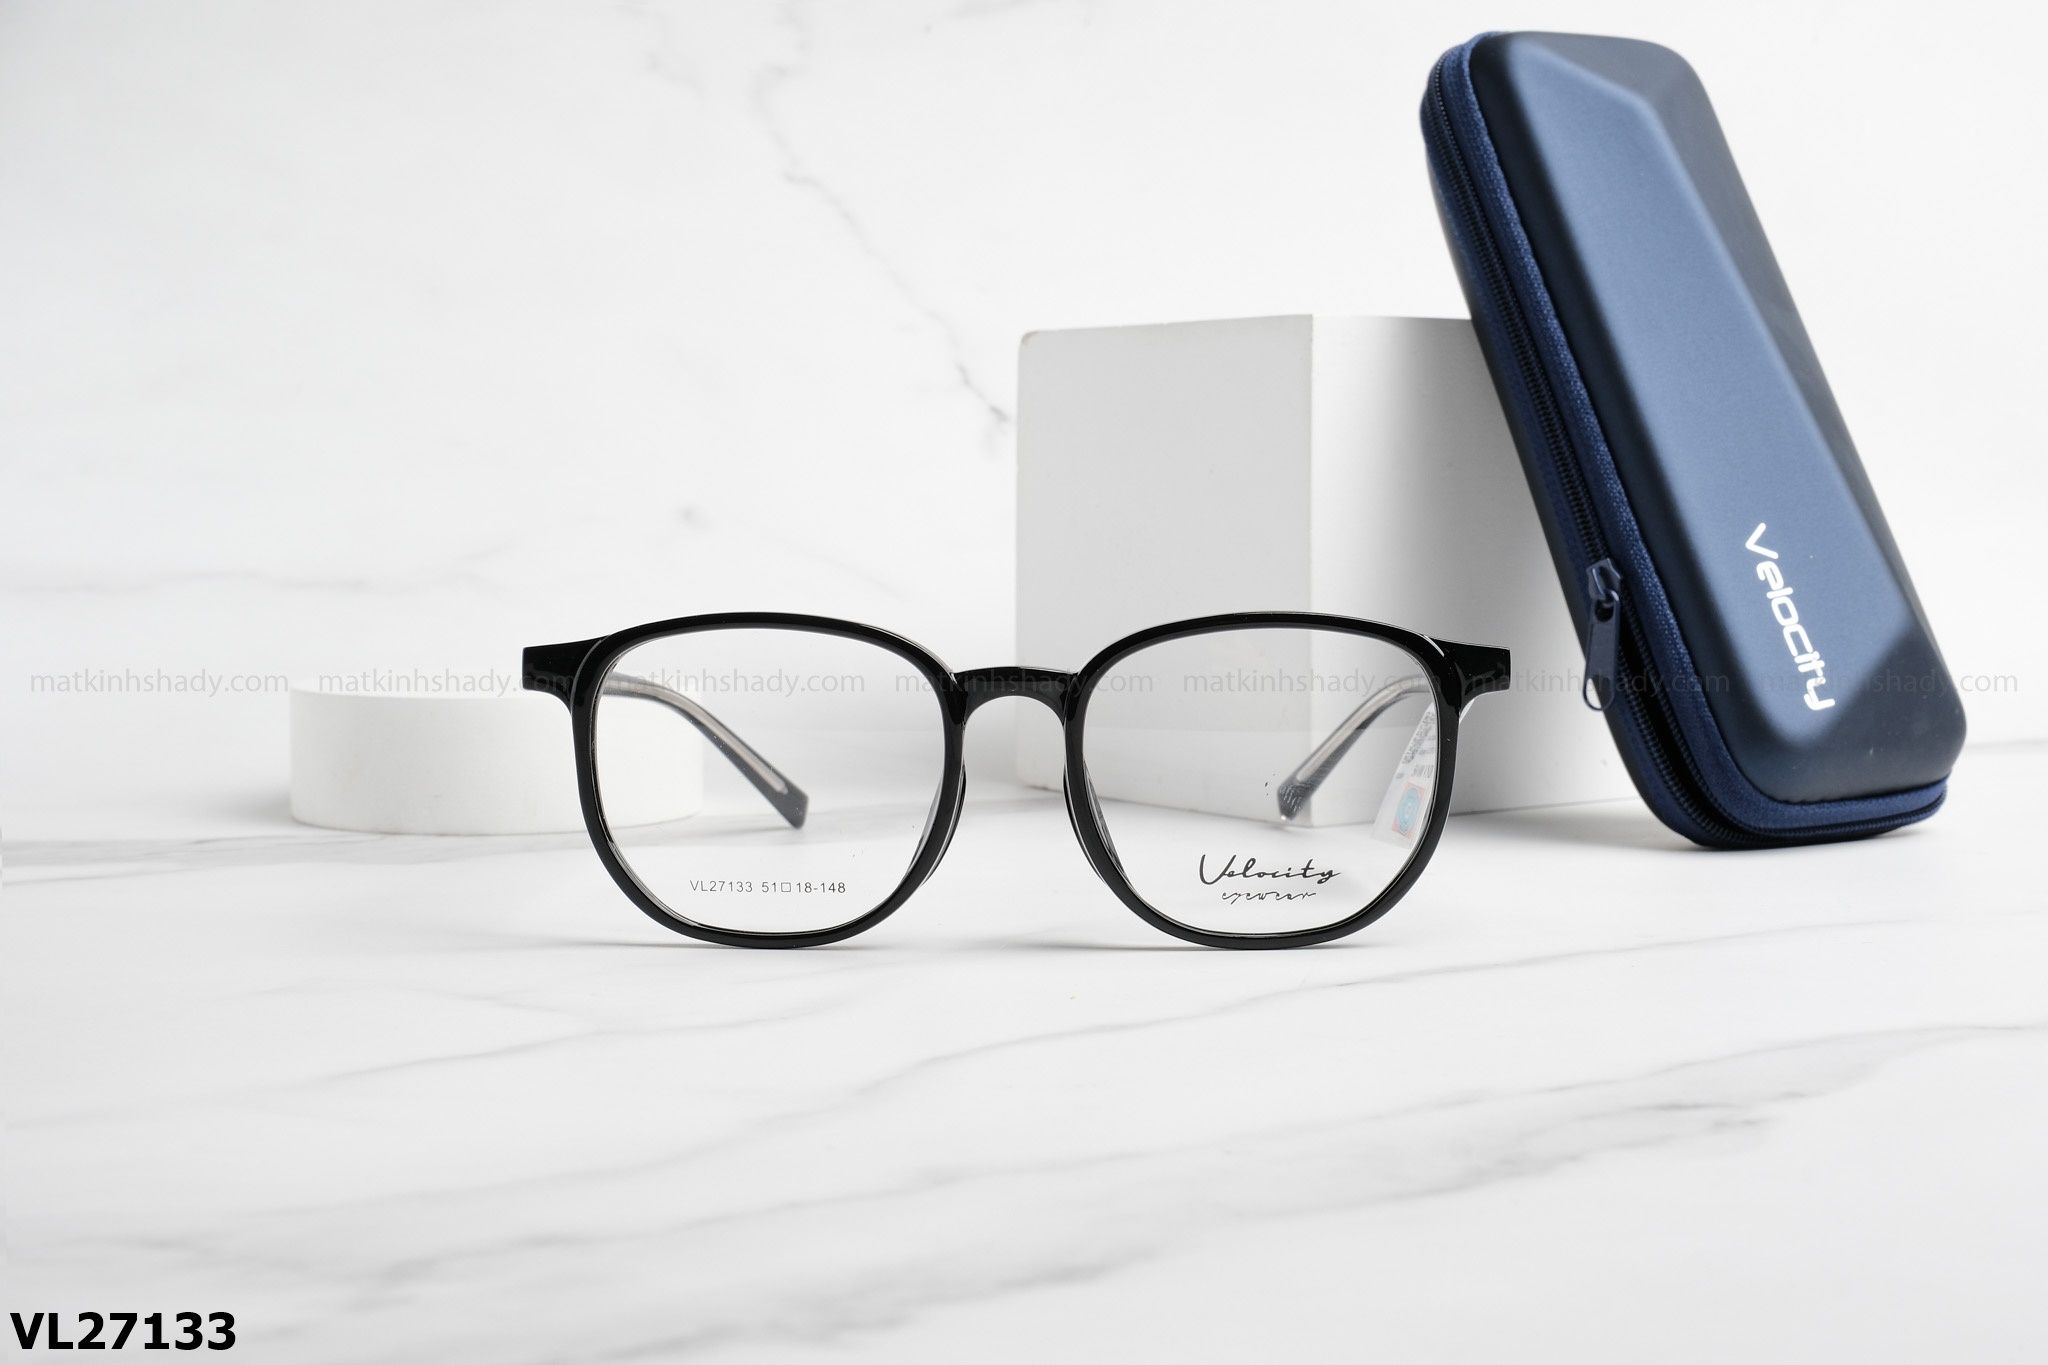  Velocity Eyewear - Glasses - VL27133 